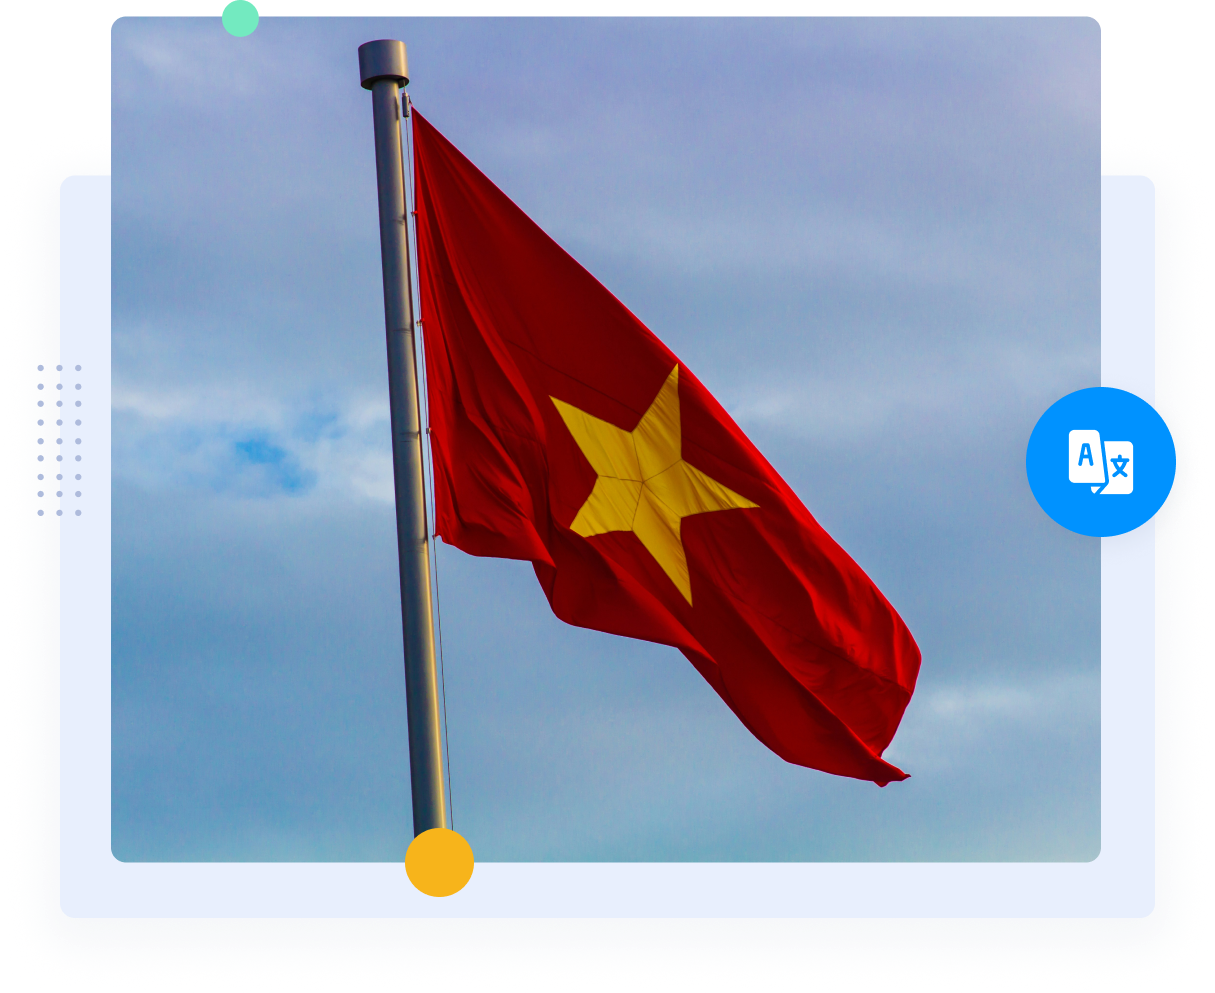 La bandiera rossa del Vietnam con la stella gialla che rappresenta la traduzione vietnamita-inglese.